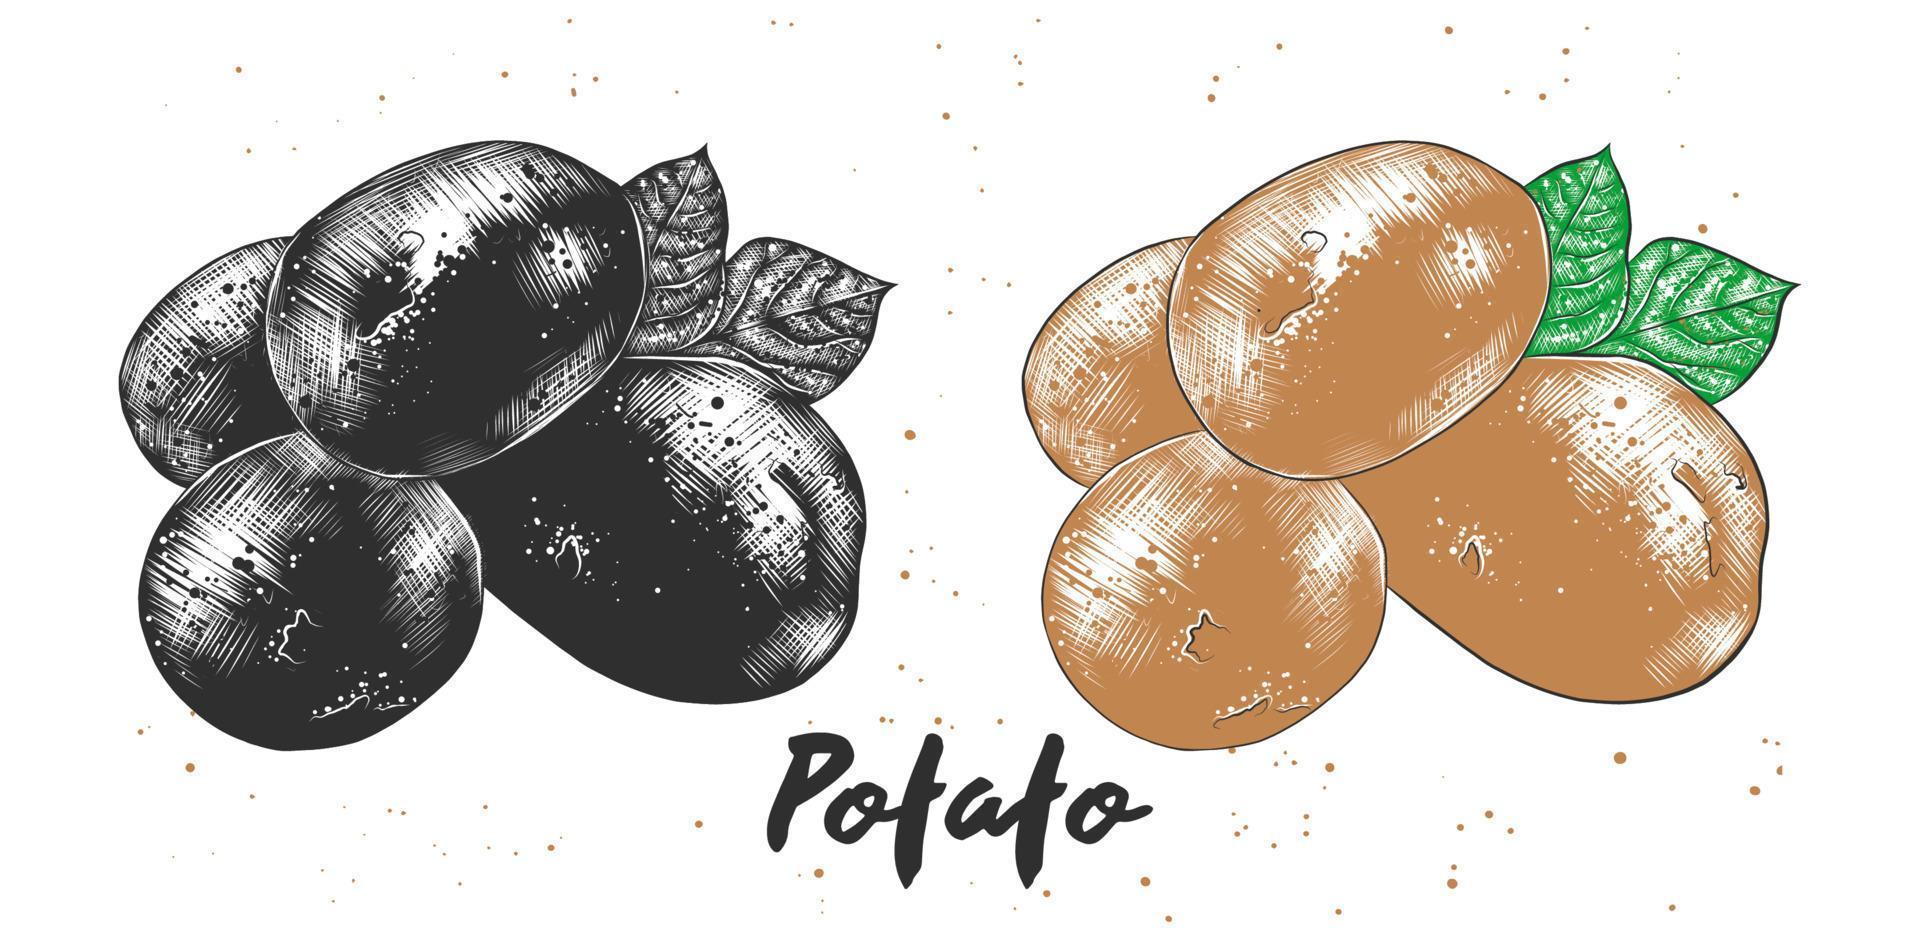 vektor graverat stil illustration för affischer, dekoration och skriva ut. hand dragen skiss av potatis i svartvit och färgrik. detaljerad vegetarian mat teckning.